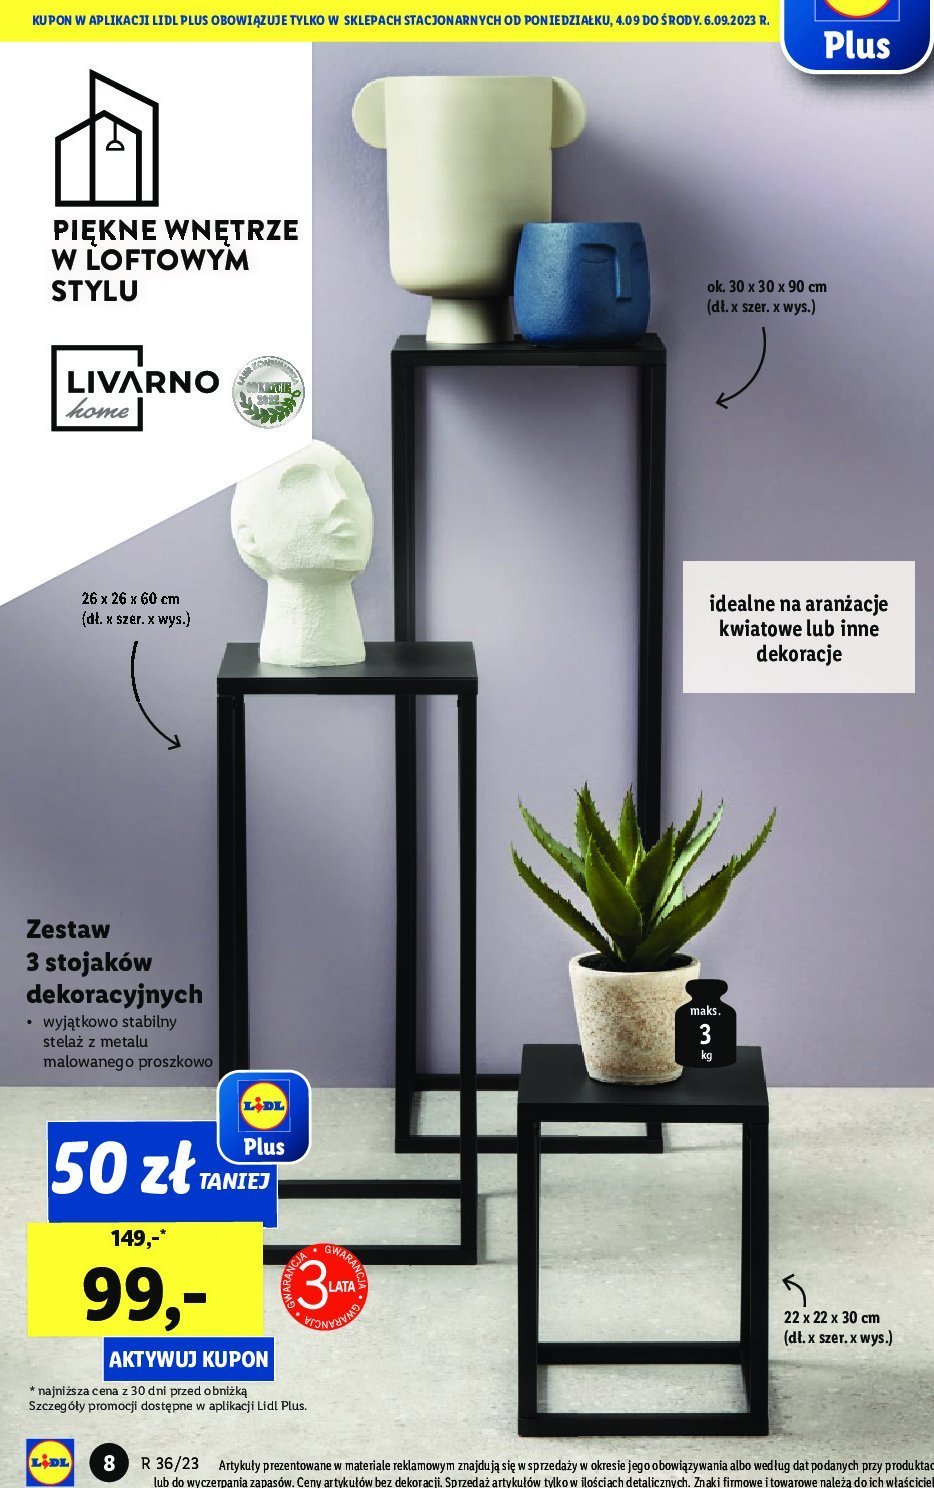 Zestaw stojaków dekoracyjnych LIVARNO HOME - cena - promocje - opinie -  sklep | Blix.pl - Brak ofert